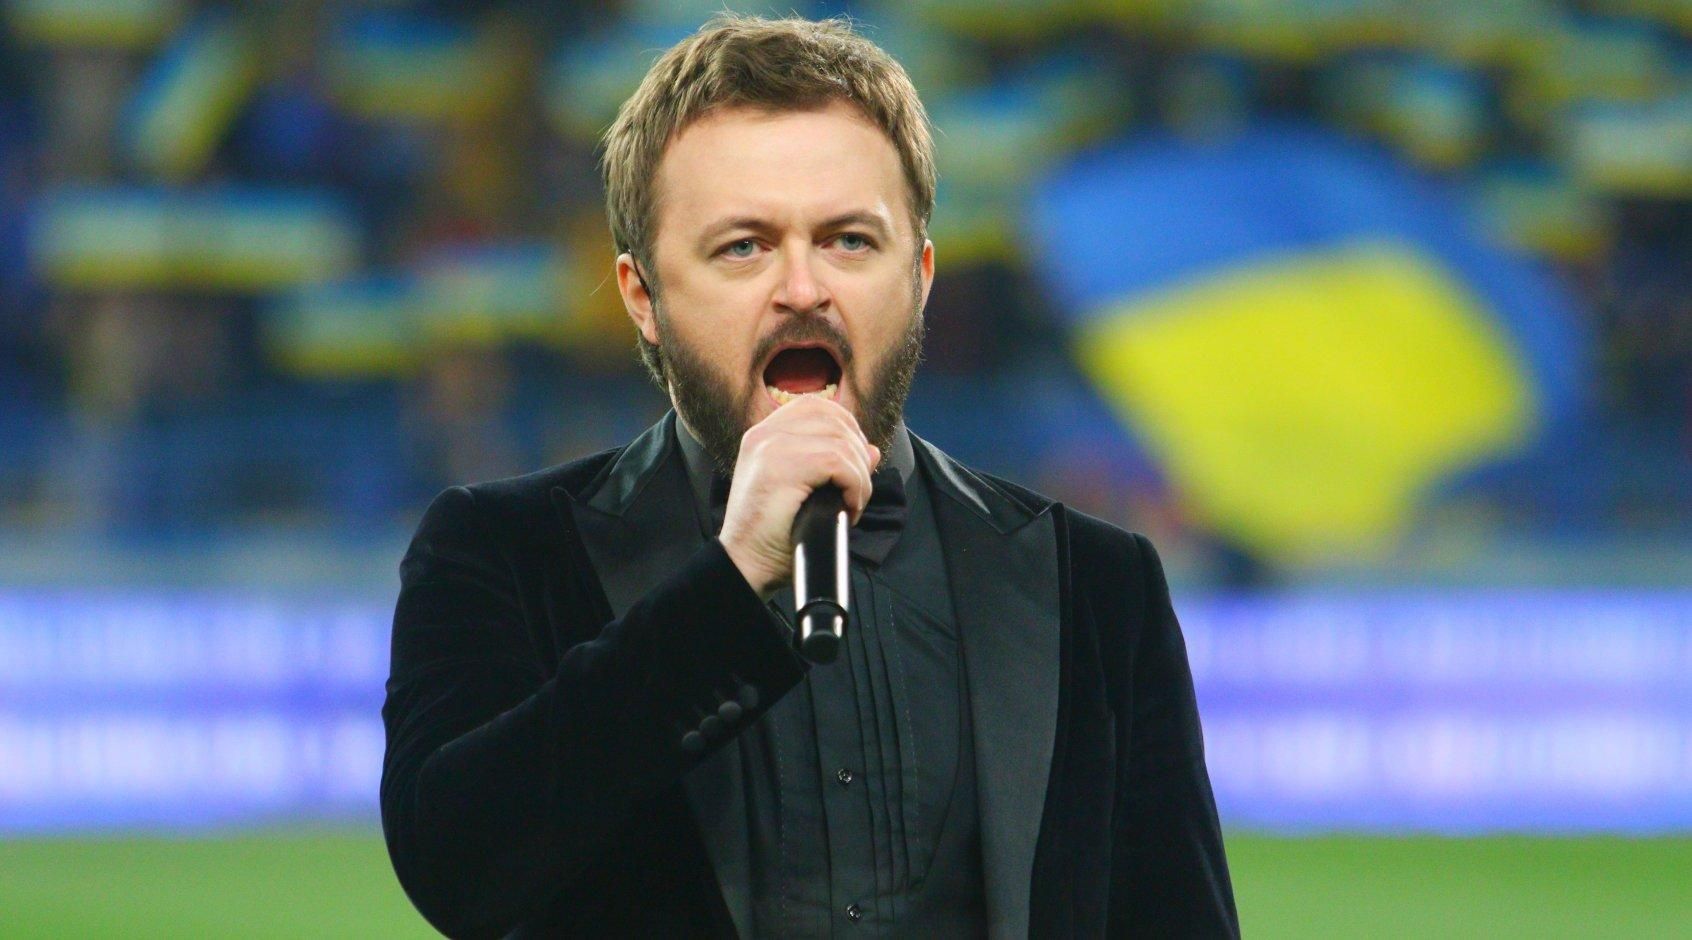 Дзиздьо исполнит гимн Украины на "Арене Львов" перед матчем с боснийцами